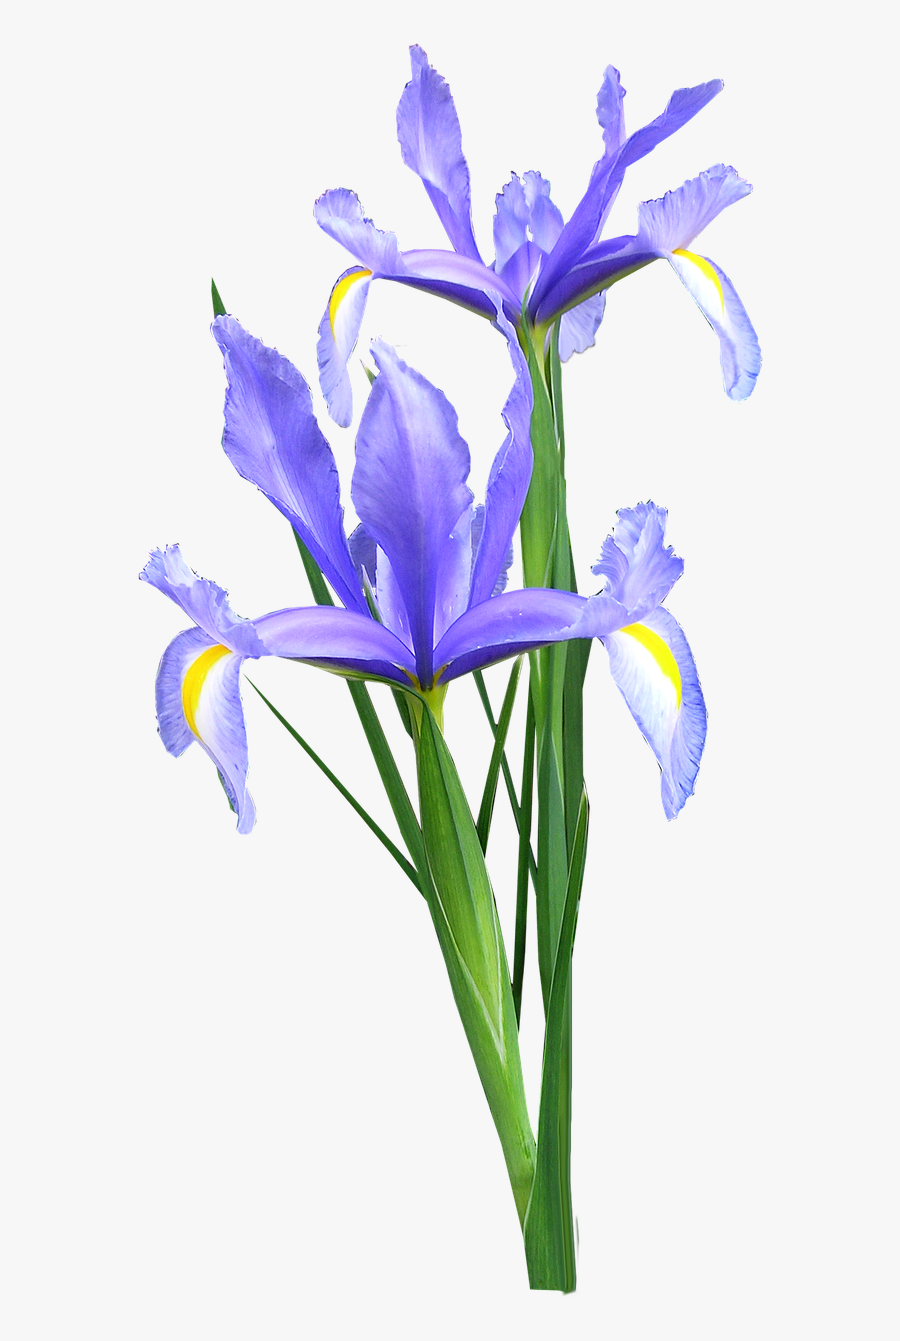 Iris Dutch Flowers - Iris Flower Png, Transparent Clipart